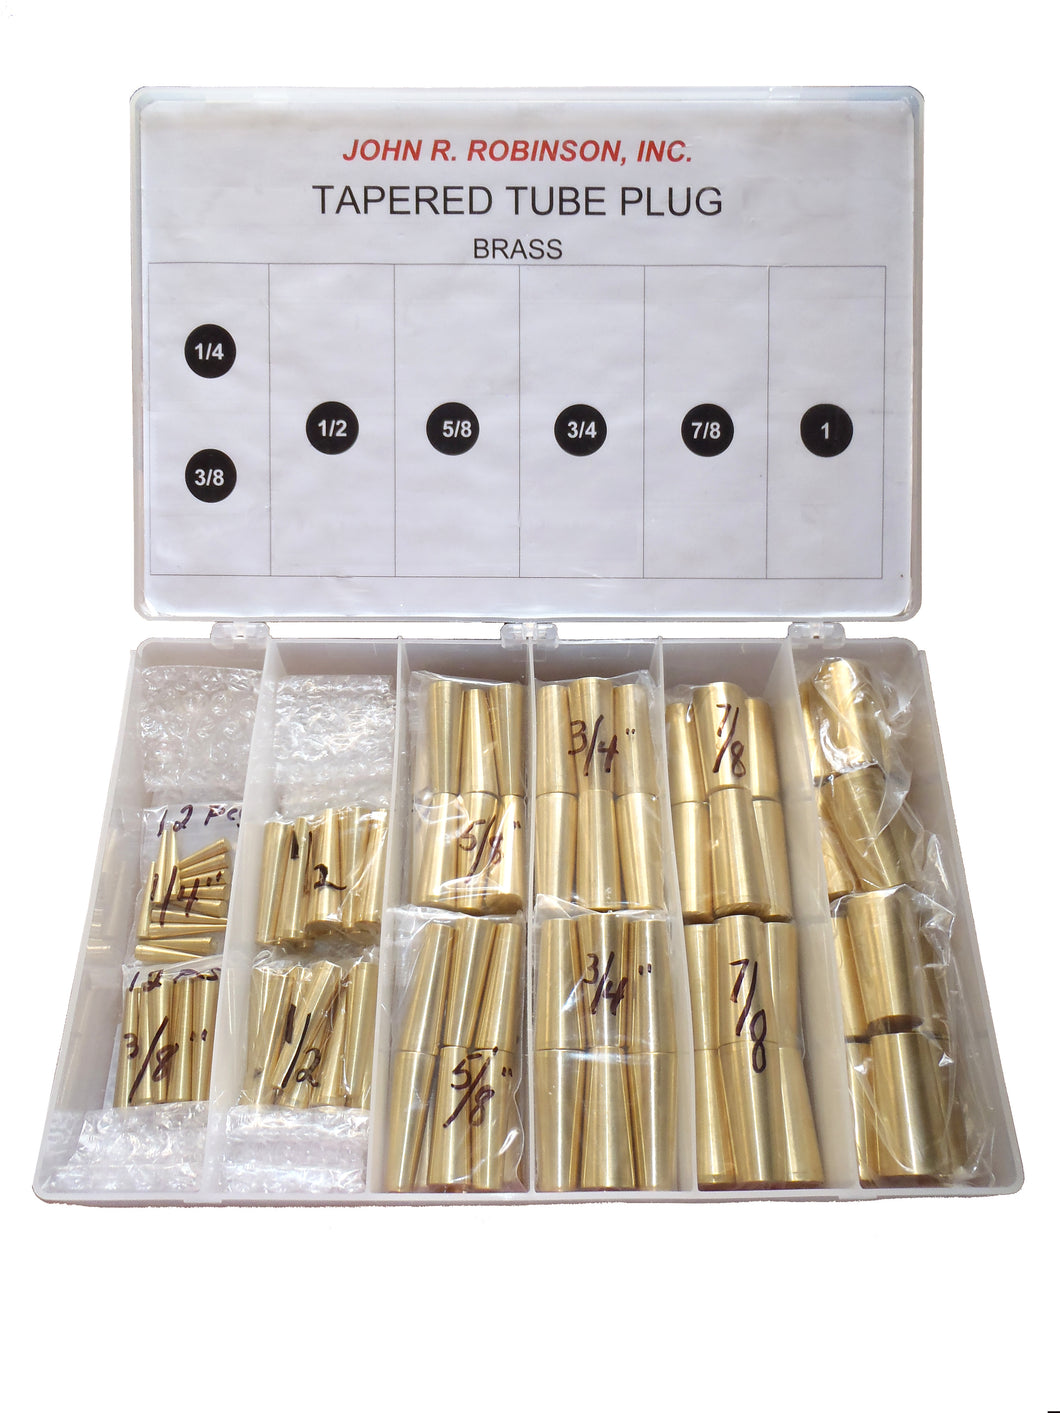 Tapered Tube Plug Repair Kit